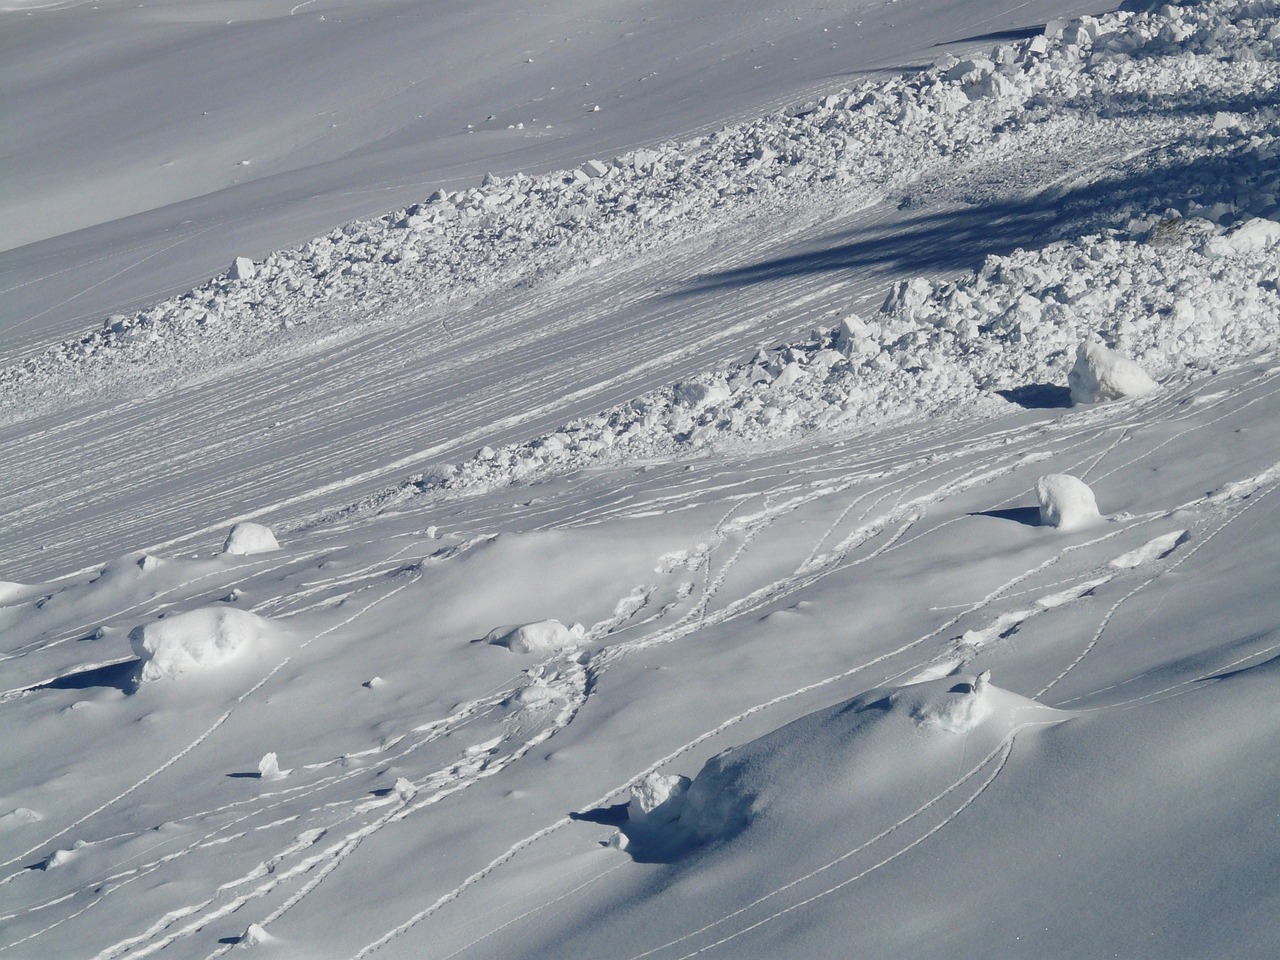 Αυστρία: Χιονοστιβάδα παρέσυρε και σκότωσε τρεις σκιέρ σε χιονοδρομικό κέντρο